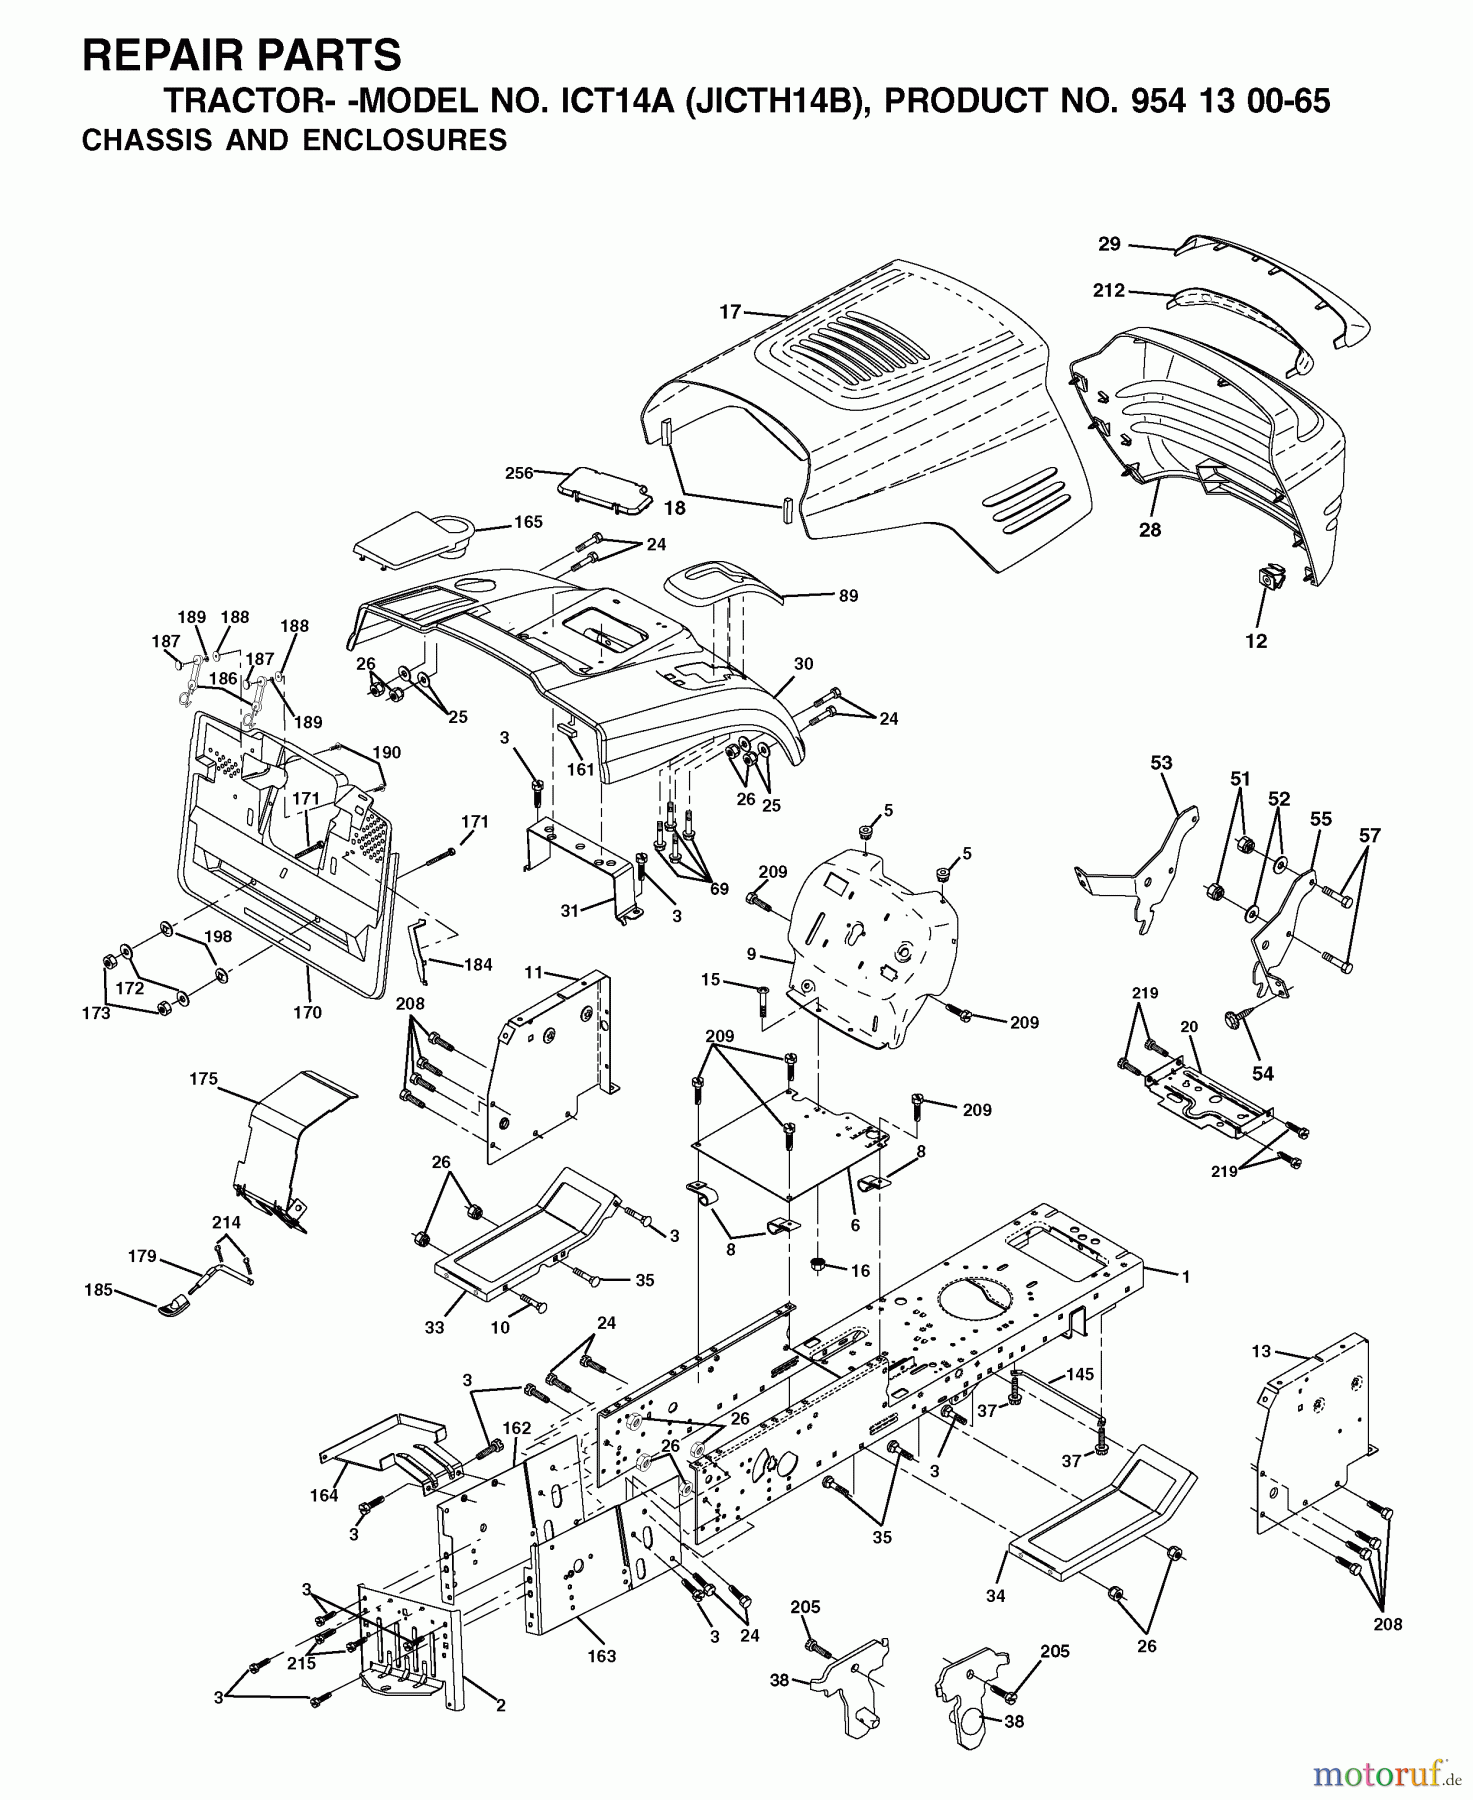  Jonsered Rasen  und Garten Traktoren ICT14A (JICTH14B, 954130065) - Jonsered Lawn & Garden Tractor (2002-02) CHASSIS ENCLOSURES